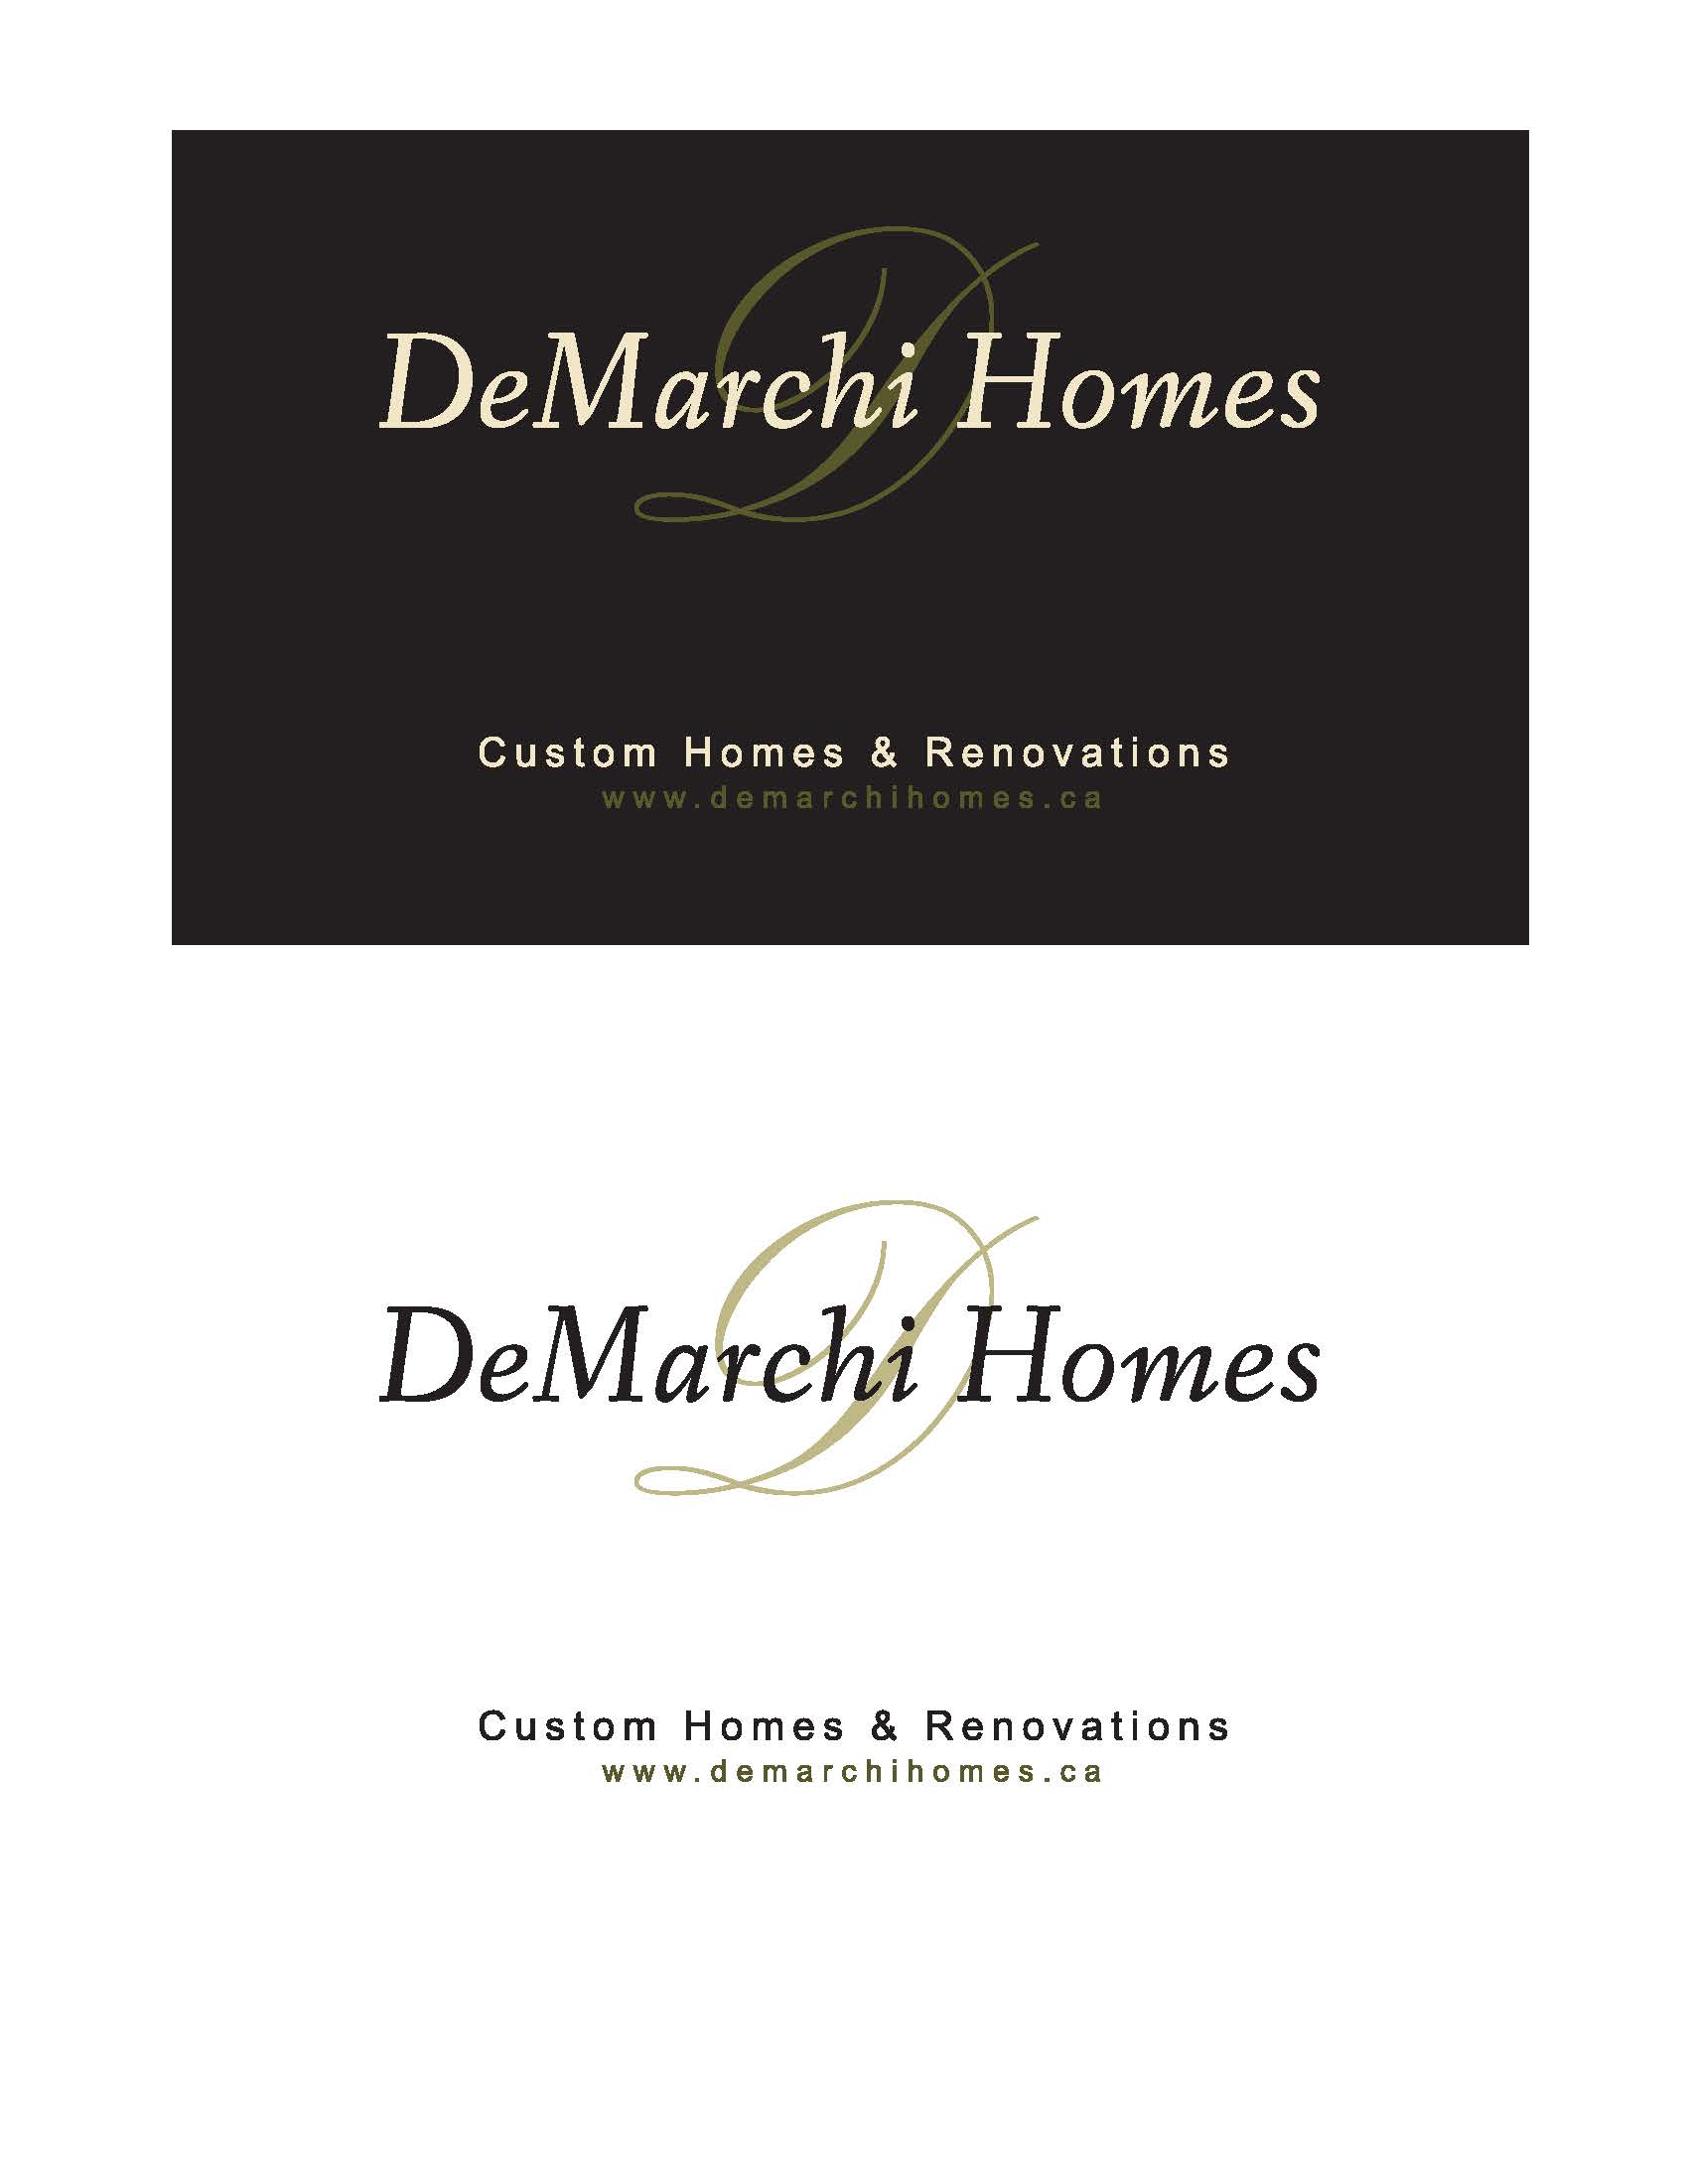 DeMarchi Homes Inc.